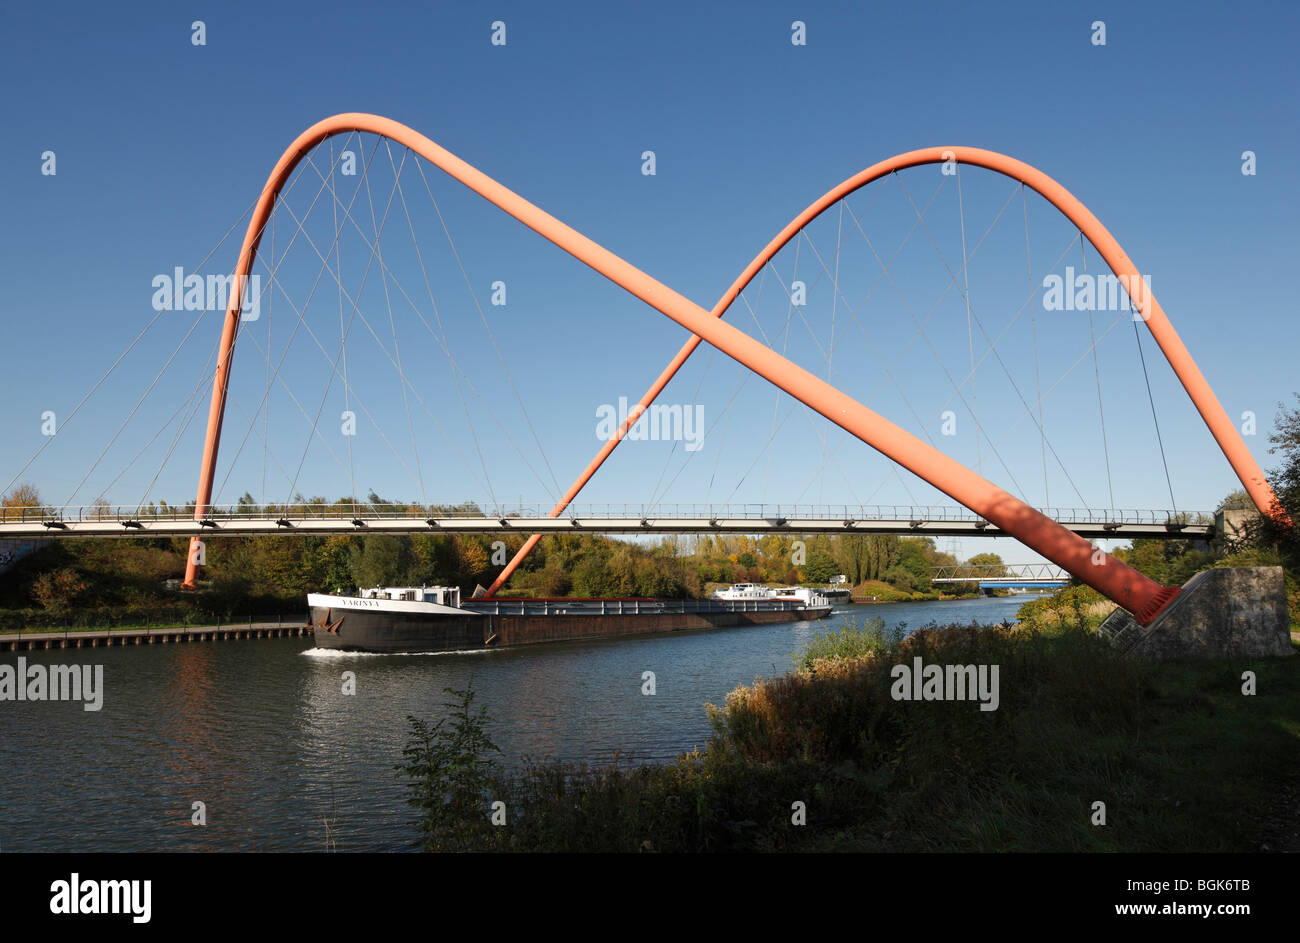 Gelsenkirchen, ehemalige Zeche Nordstern, Nordsternpark, Rote Brücke (Doppelbogenbrücke über den Rhein-Herne-Kanal) Foto Stock